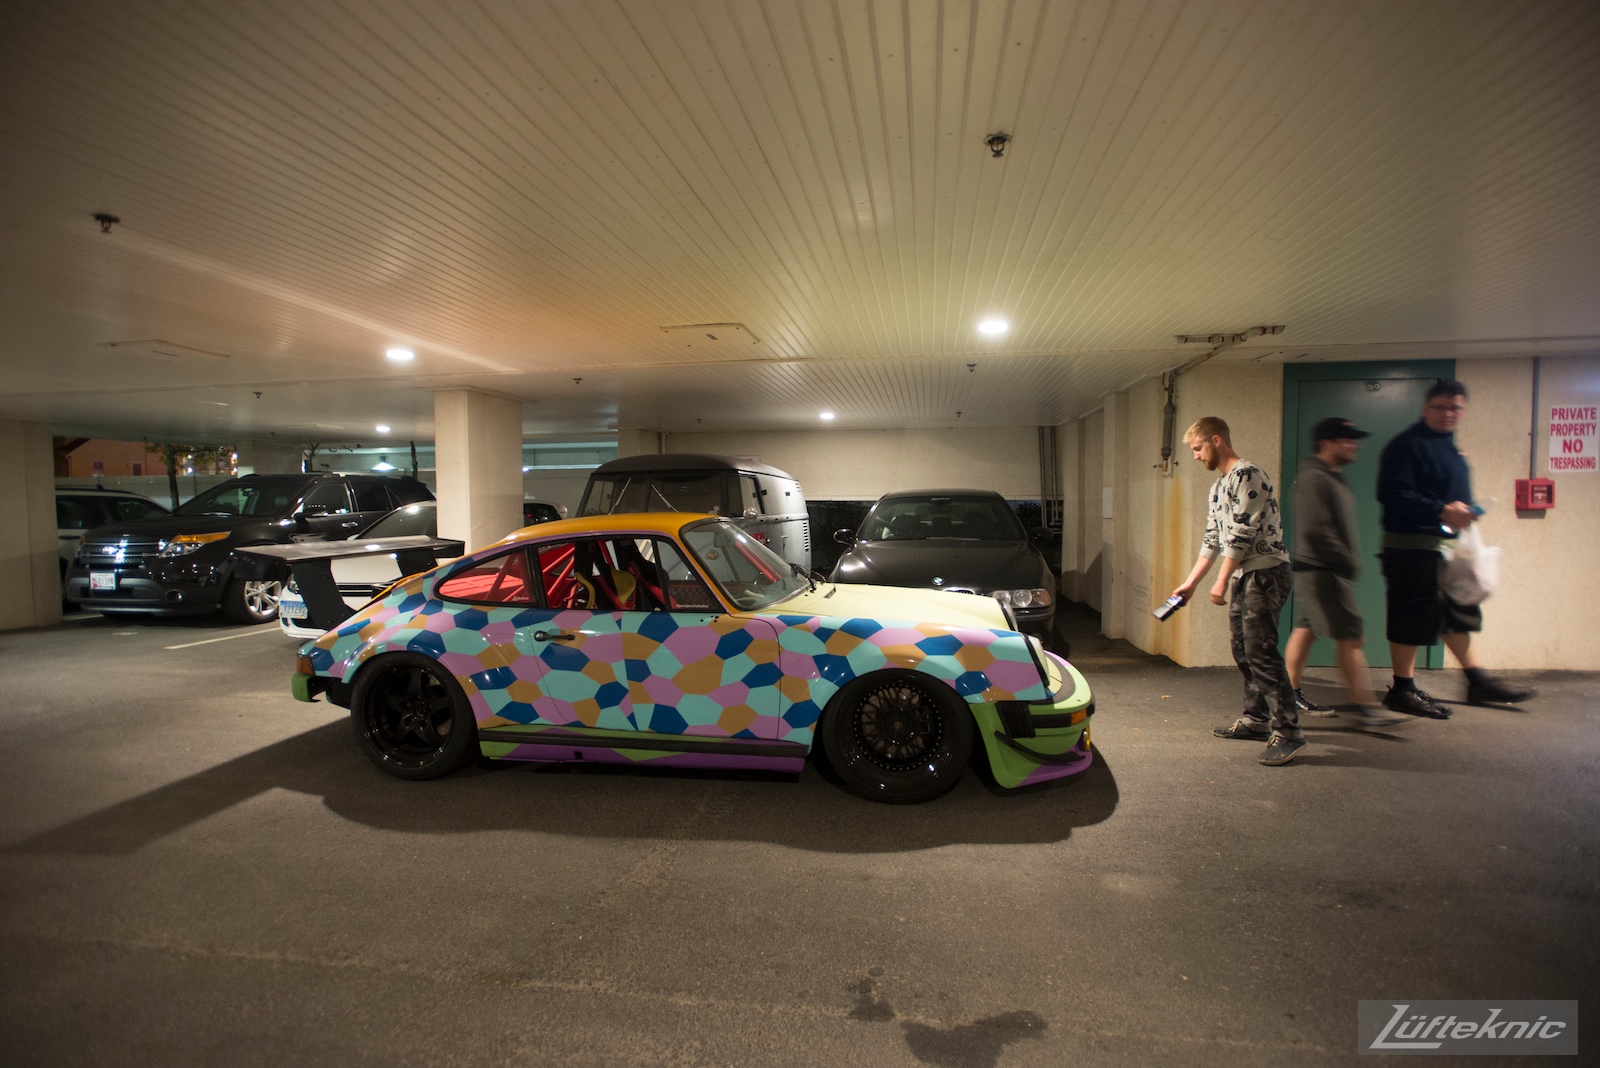 An impromptu 3am photo shoot for the Lüfteknic #projectstuka Porsche 930 Turbo